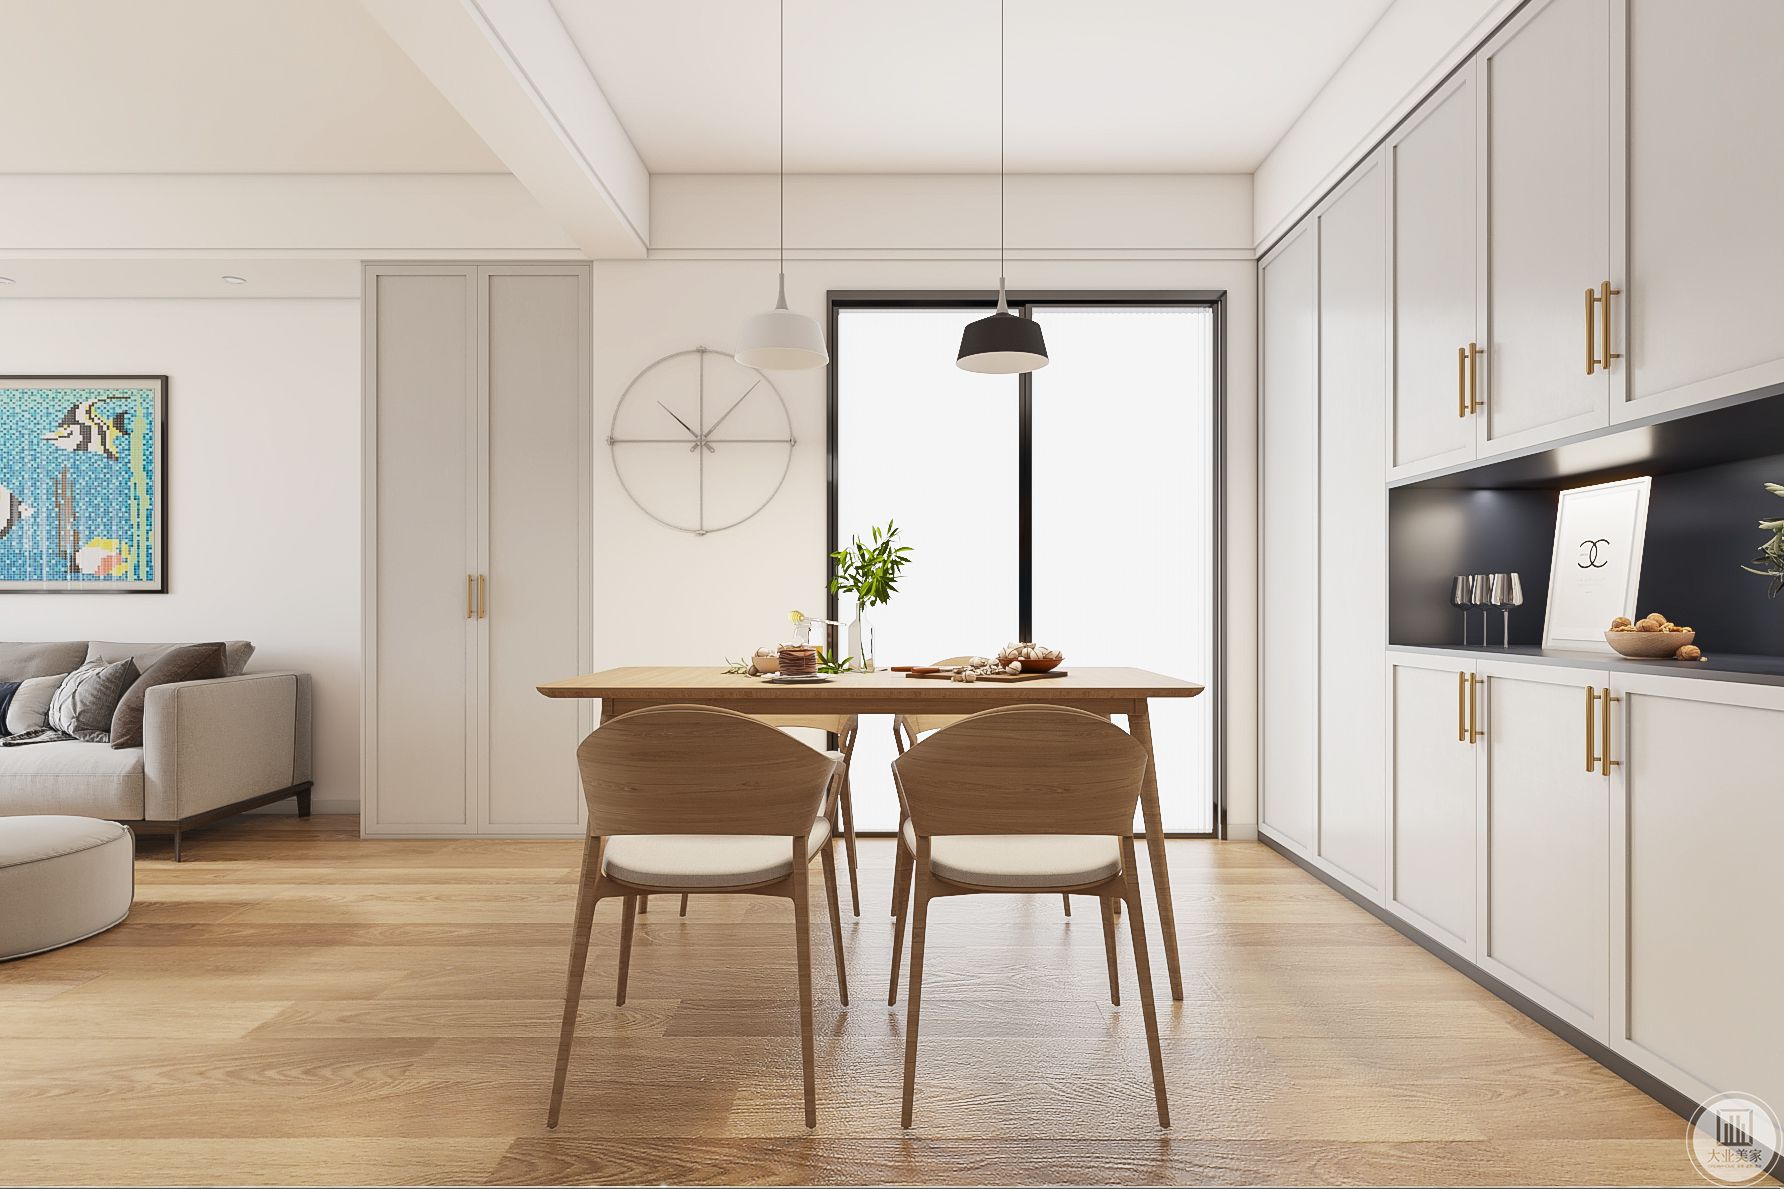 餐桌这边充分利用了房体的高度，营造了视觉上高敞宽阔的效果。只简单做了一个吊灯的直线造型，凸显简洁流畅的设计风格。